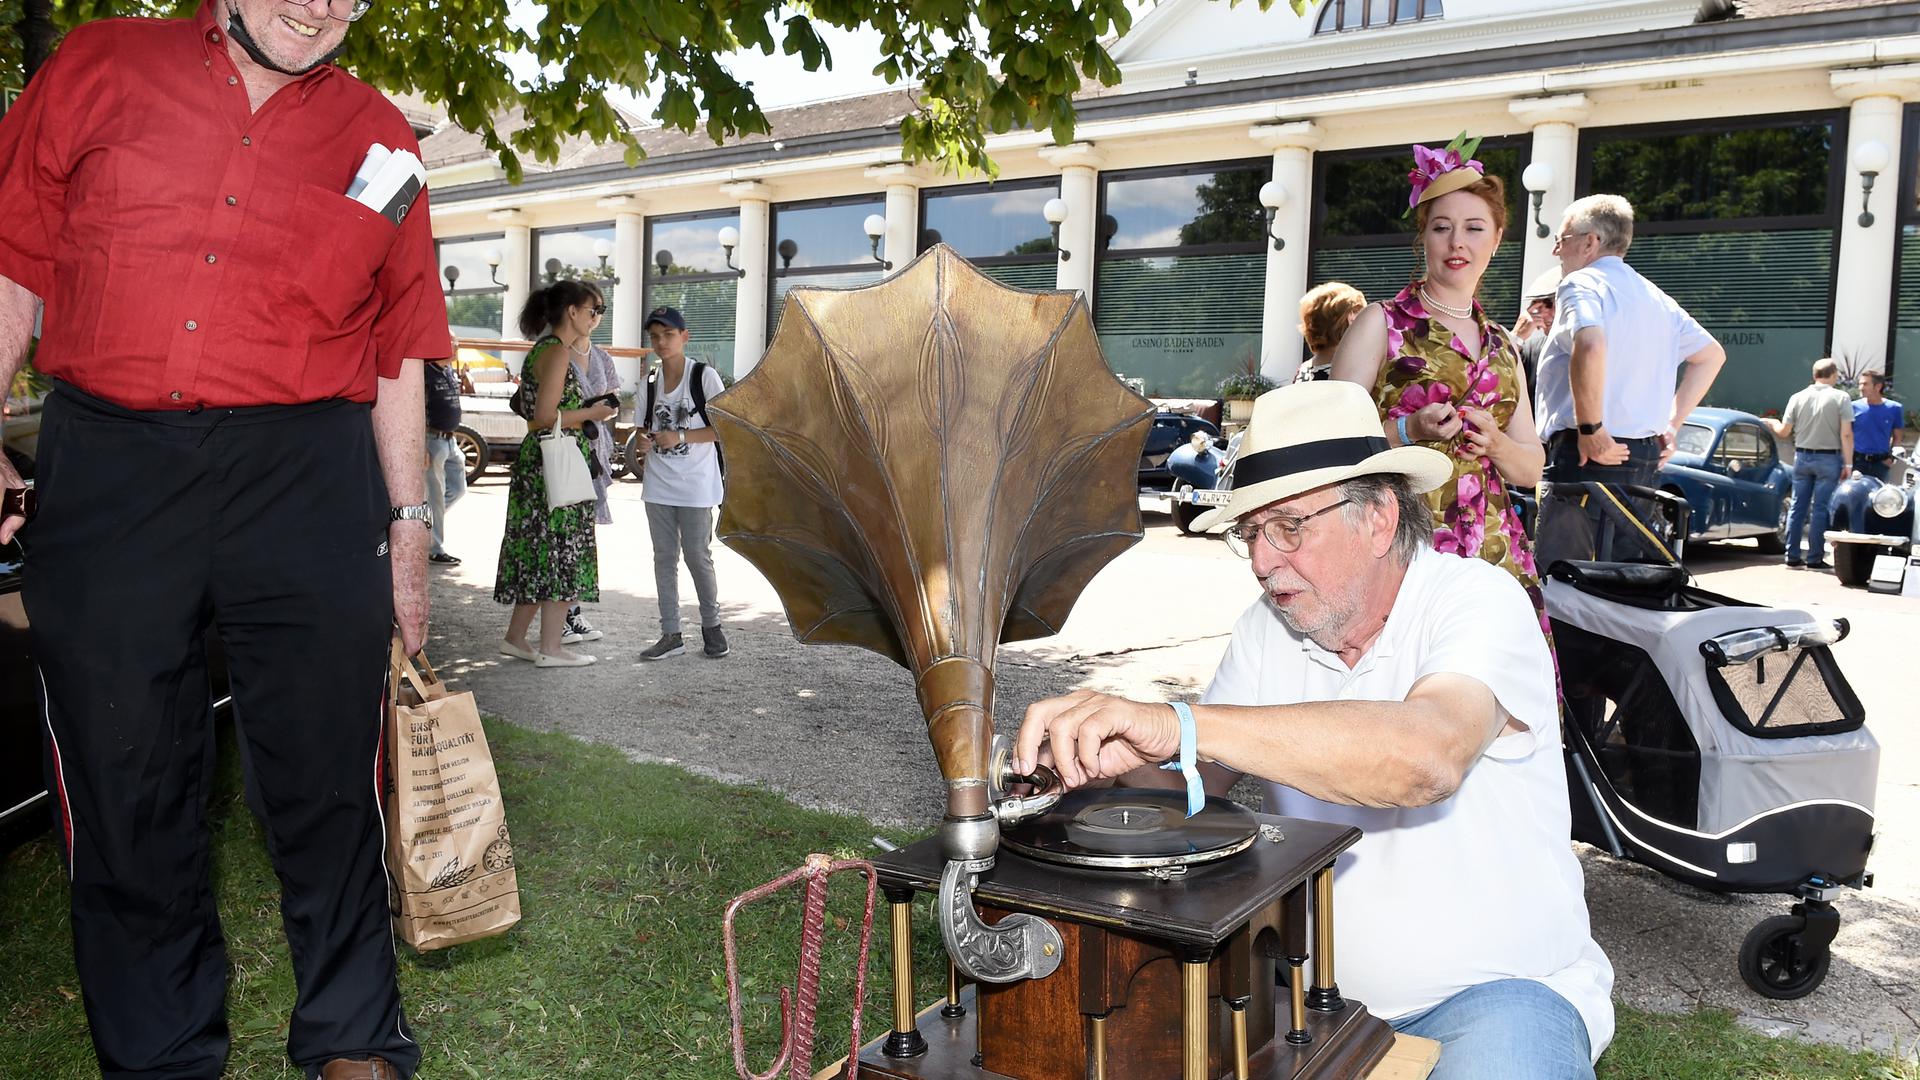 Nicht nur historische Autos waren am Samstag im Baden-Baden im Einsatz, sondern auch dieses Grammophon.